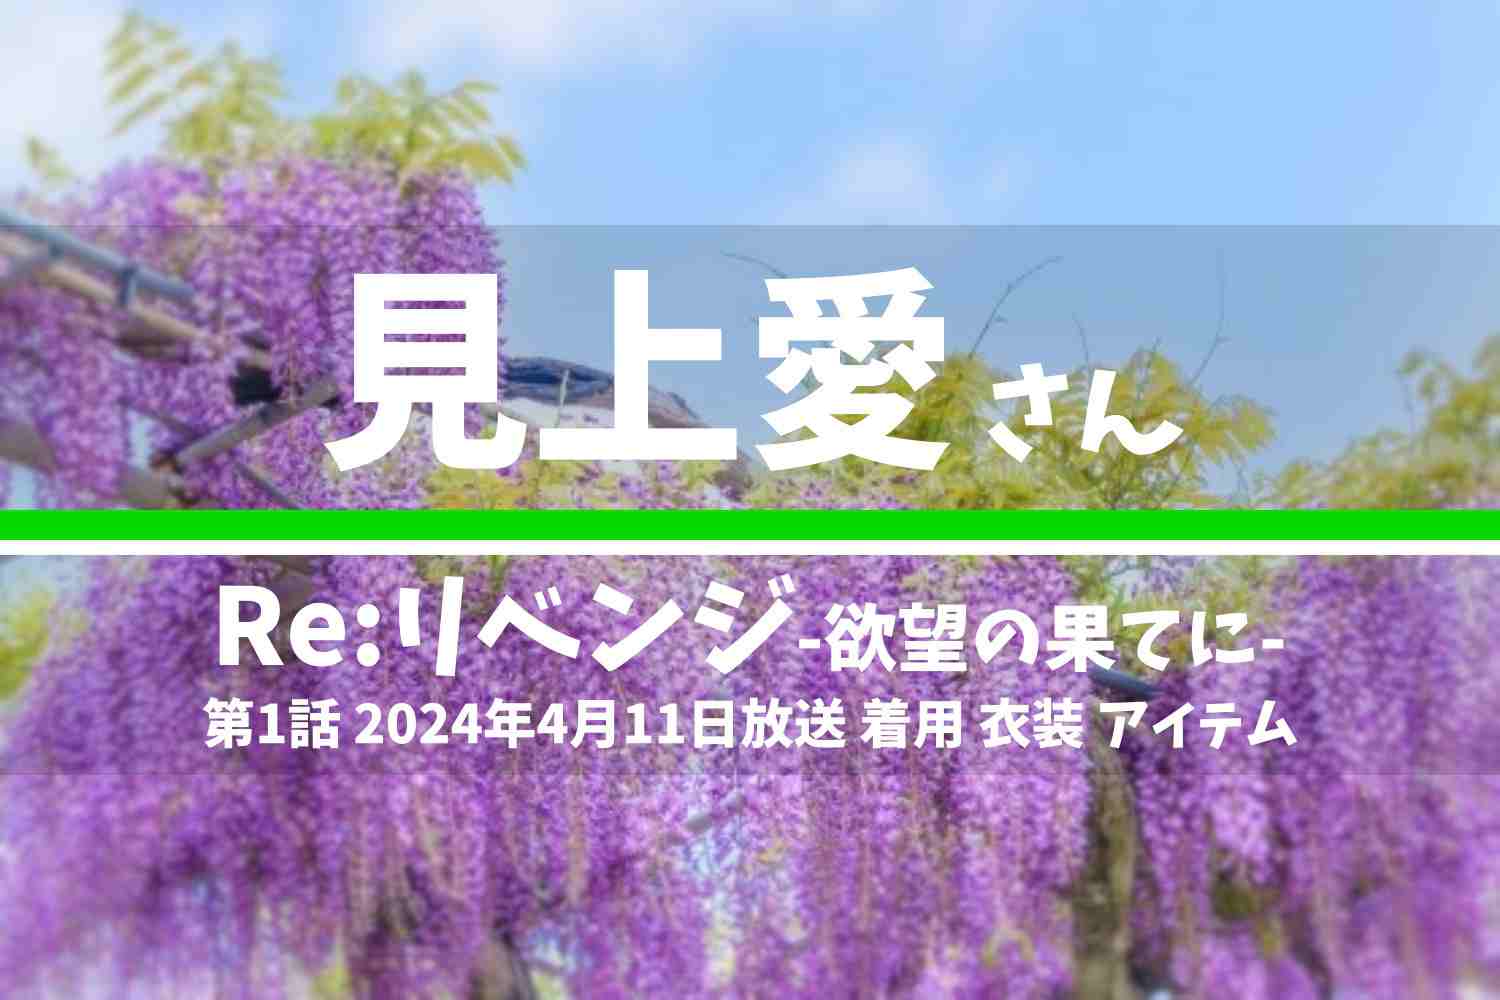 Re:リベンジ-欲望の果てに- 見上愛さん テレビドラマ 衣装 2024年4月11日放送